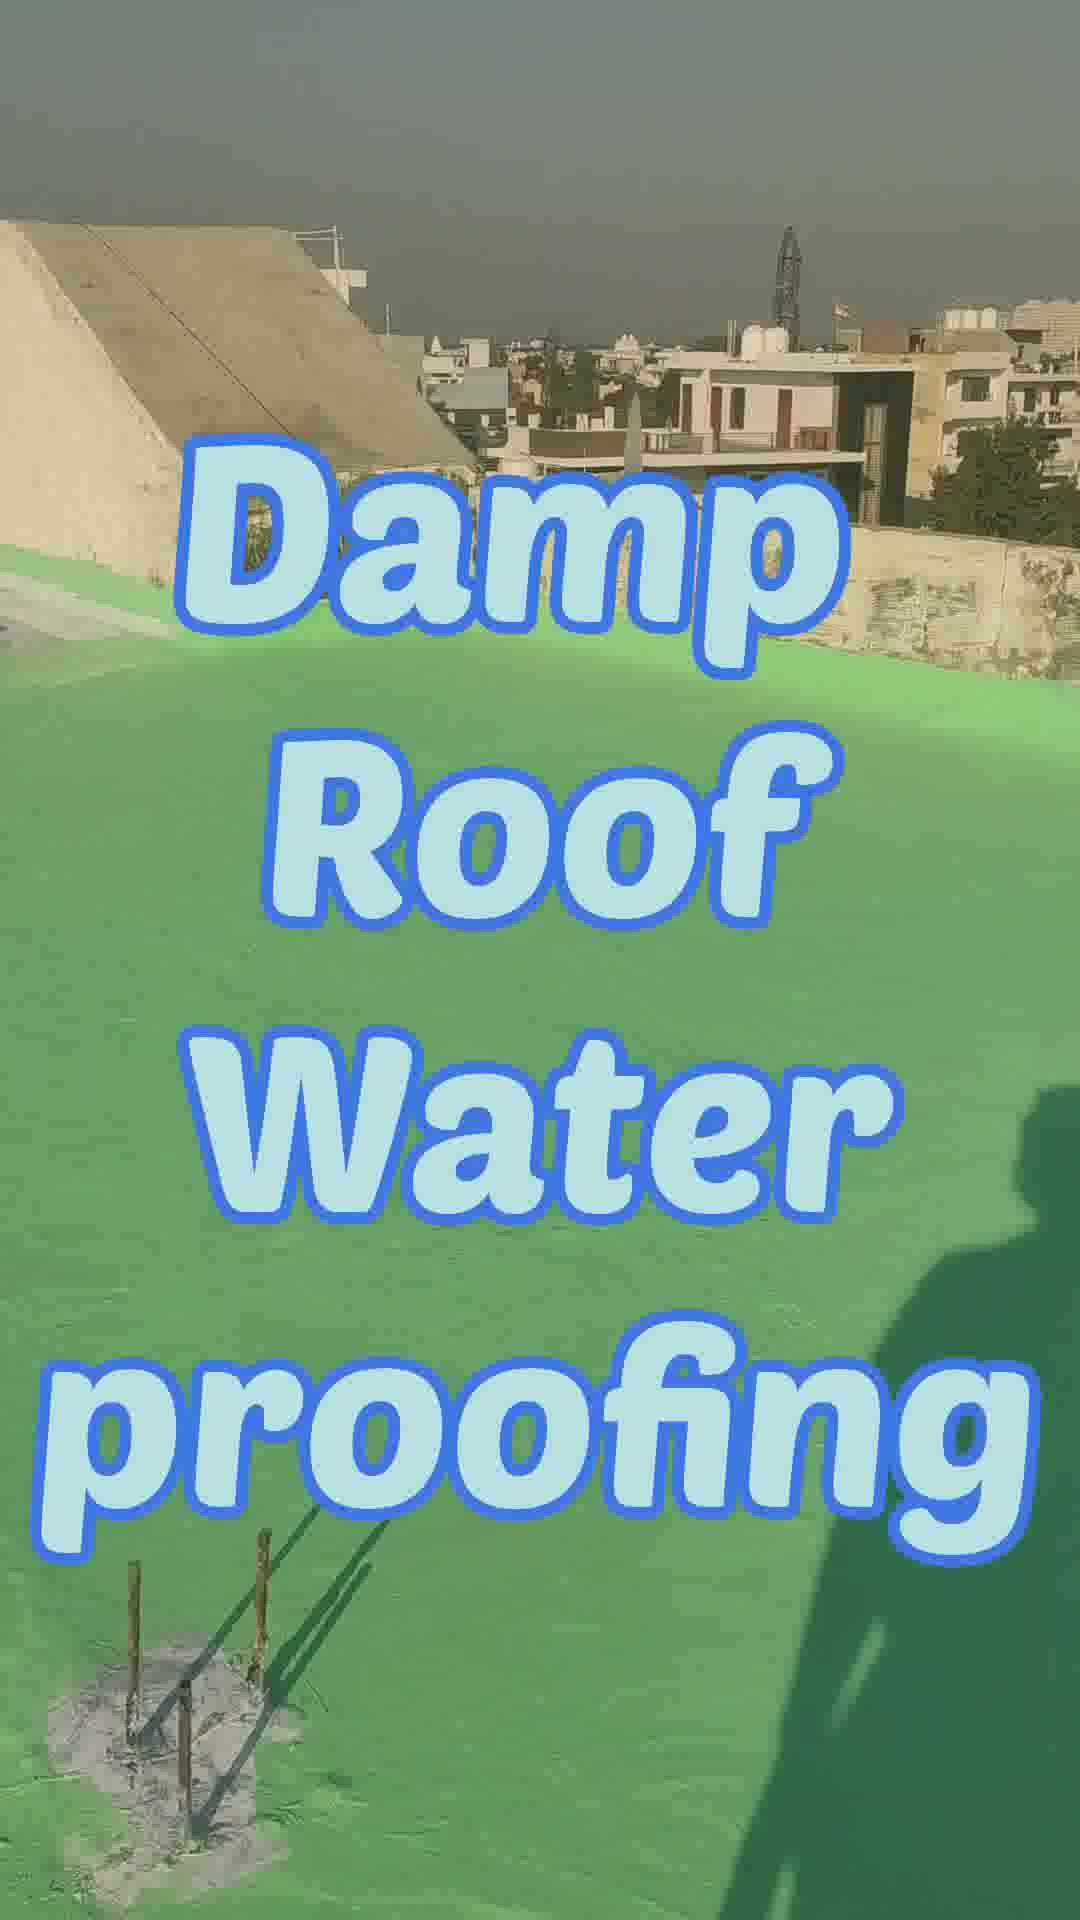 damp roof waterproofing
#roofwaterproofing